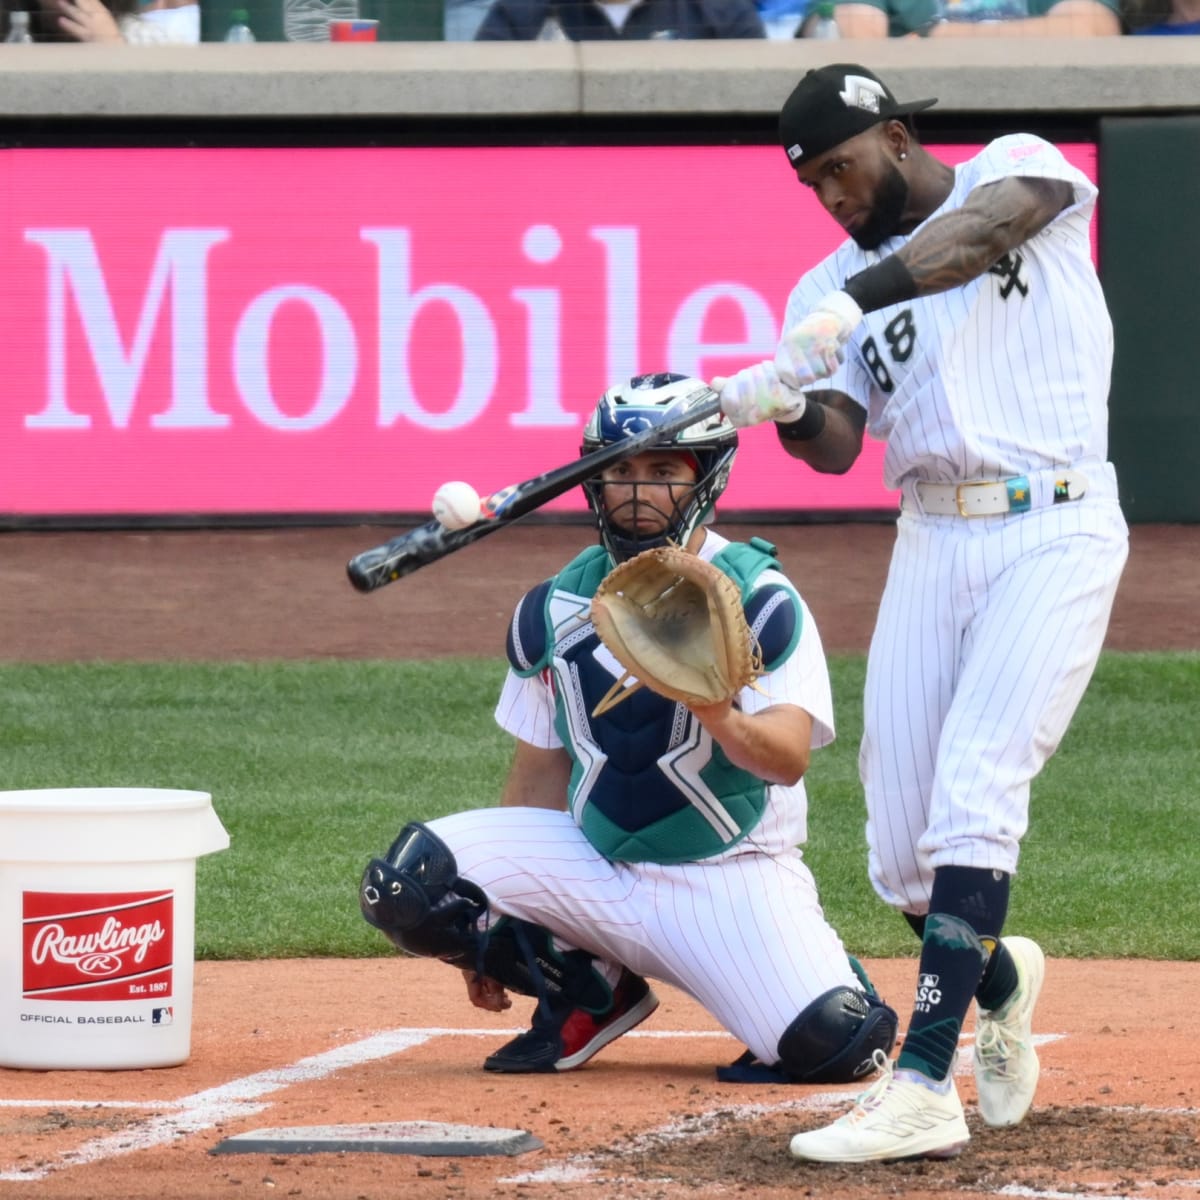 White Sox center fielder Luis Robert cleared to ramp up baseball